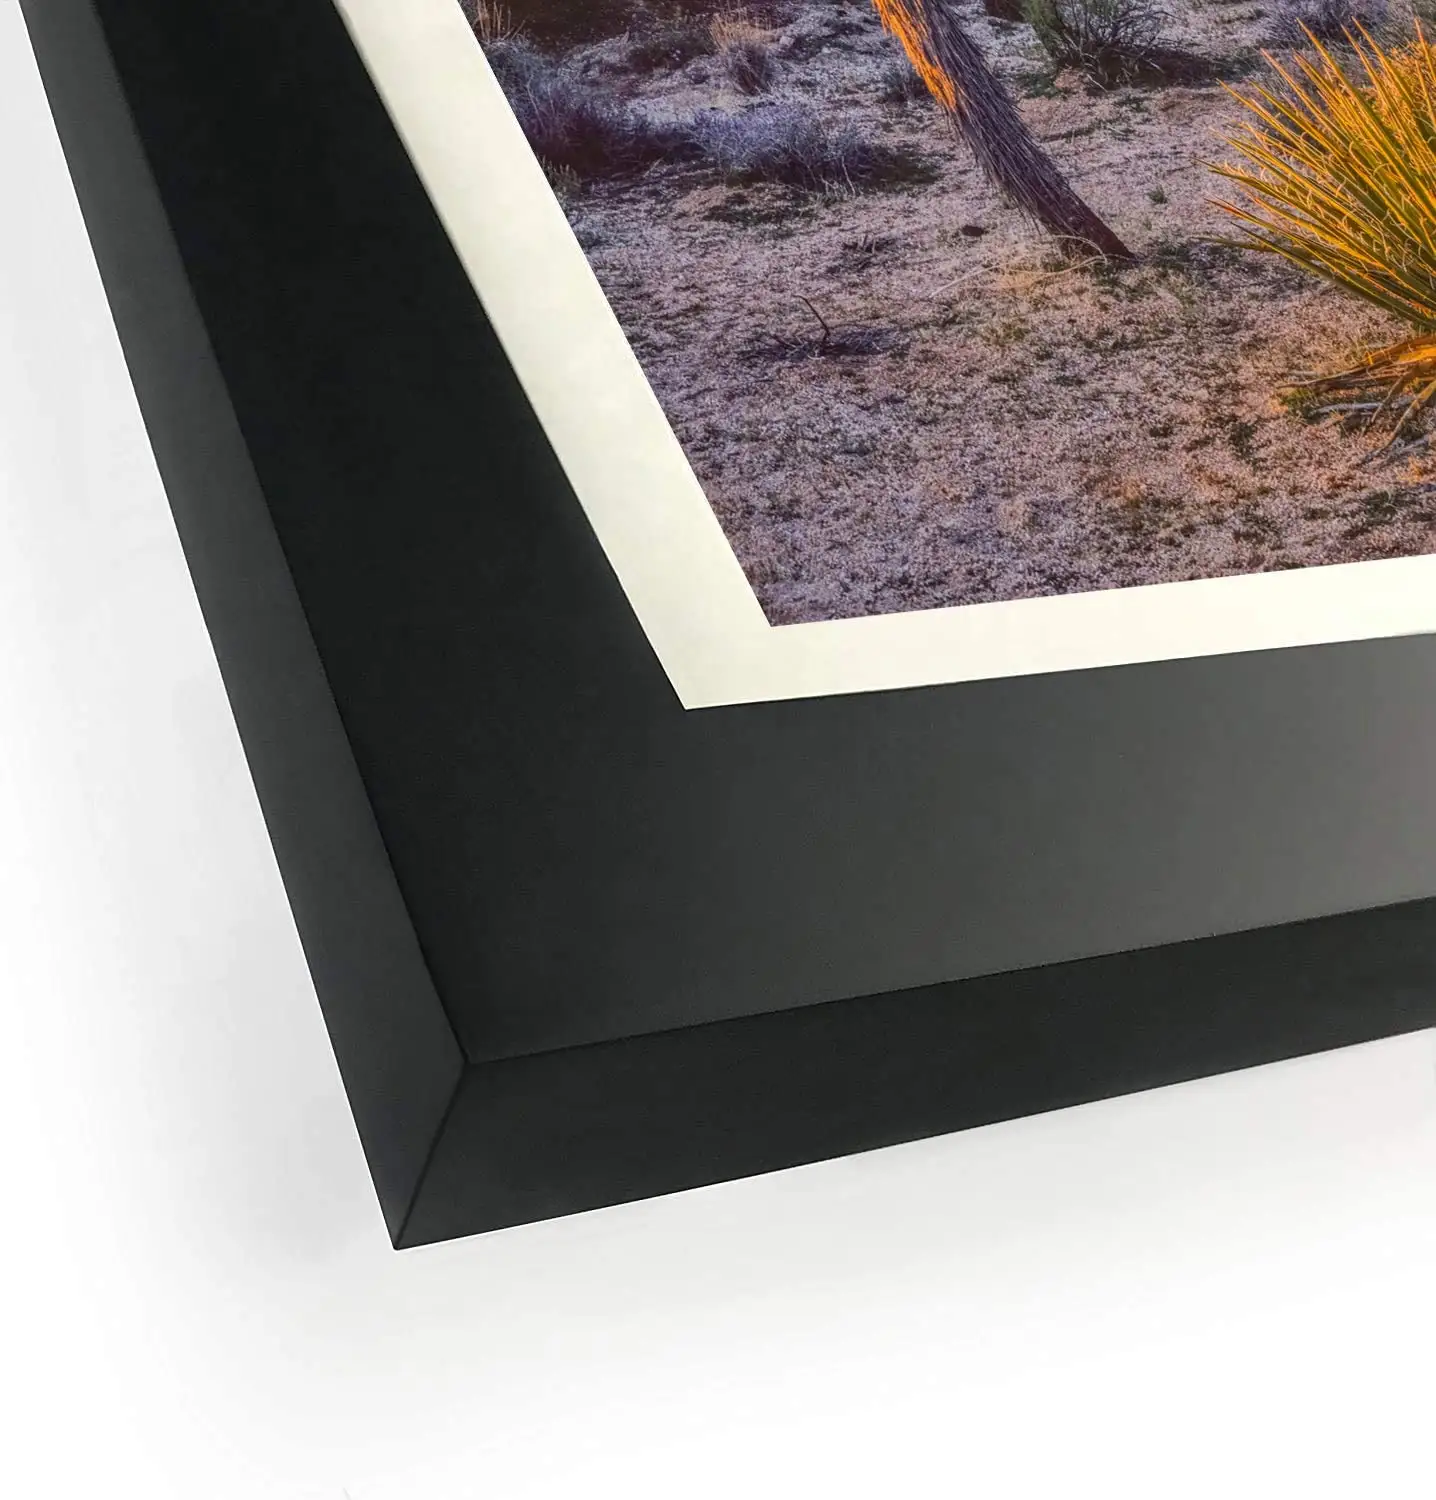 Siyah ahşap 16x20 resim çerçeve temperli cam fotoğraf yatay dikey ekran